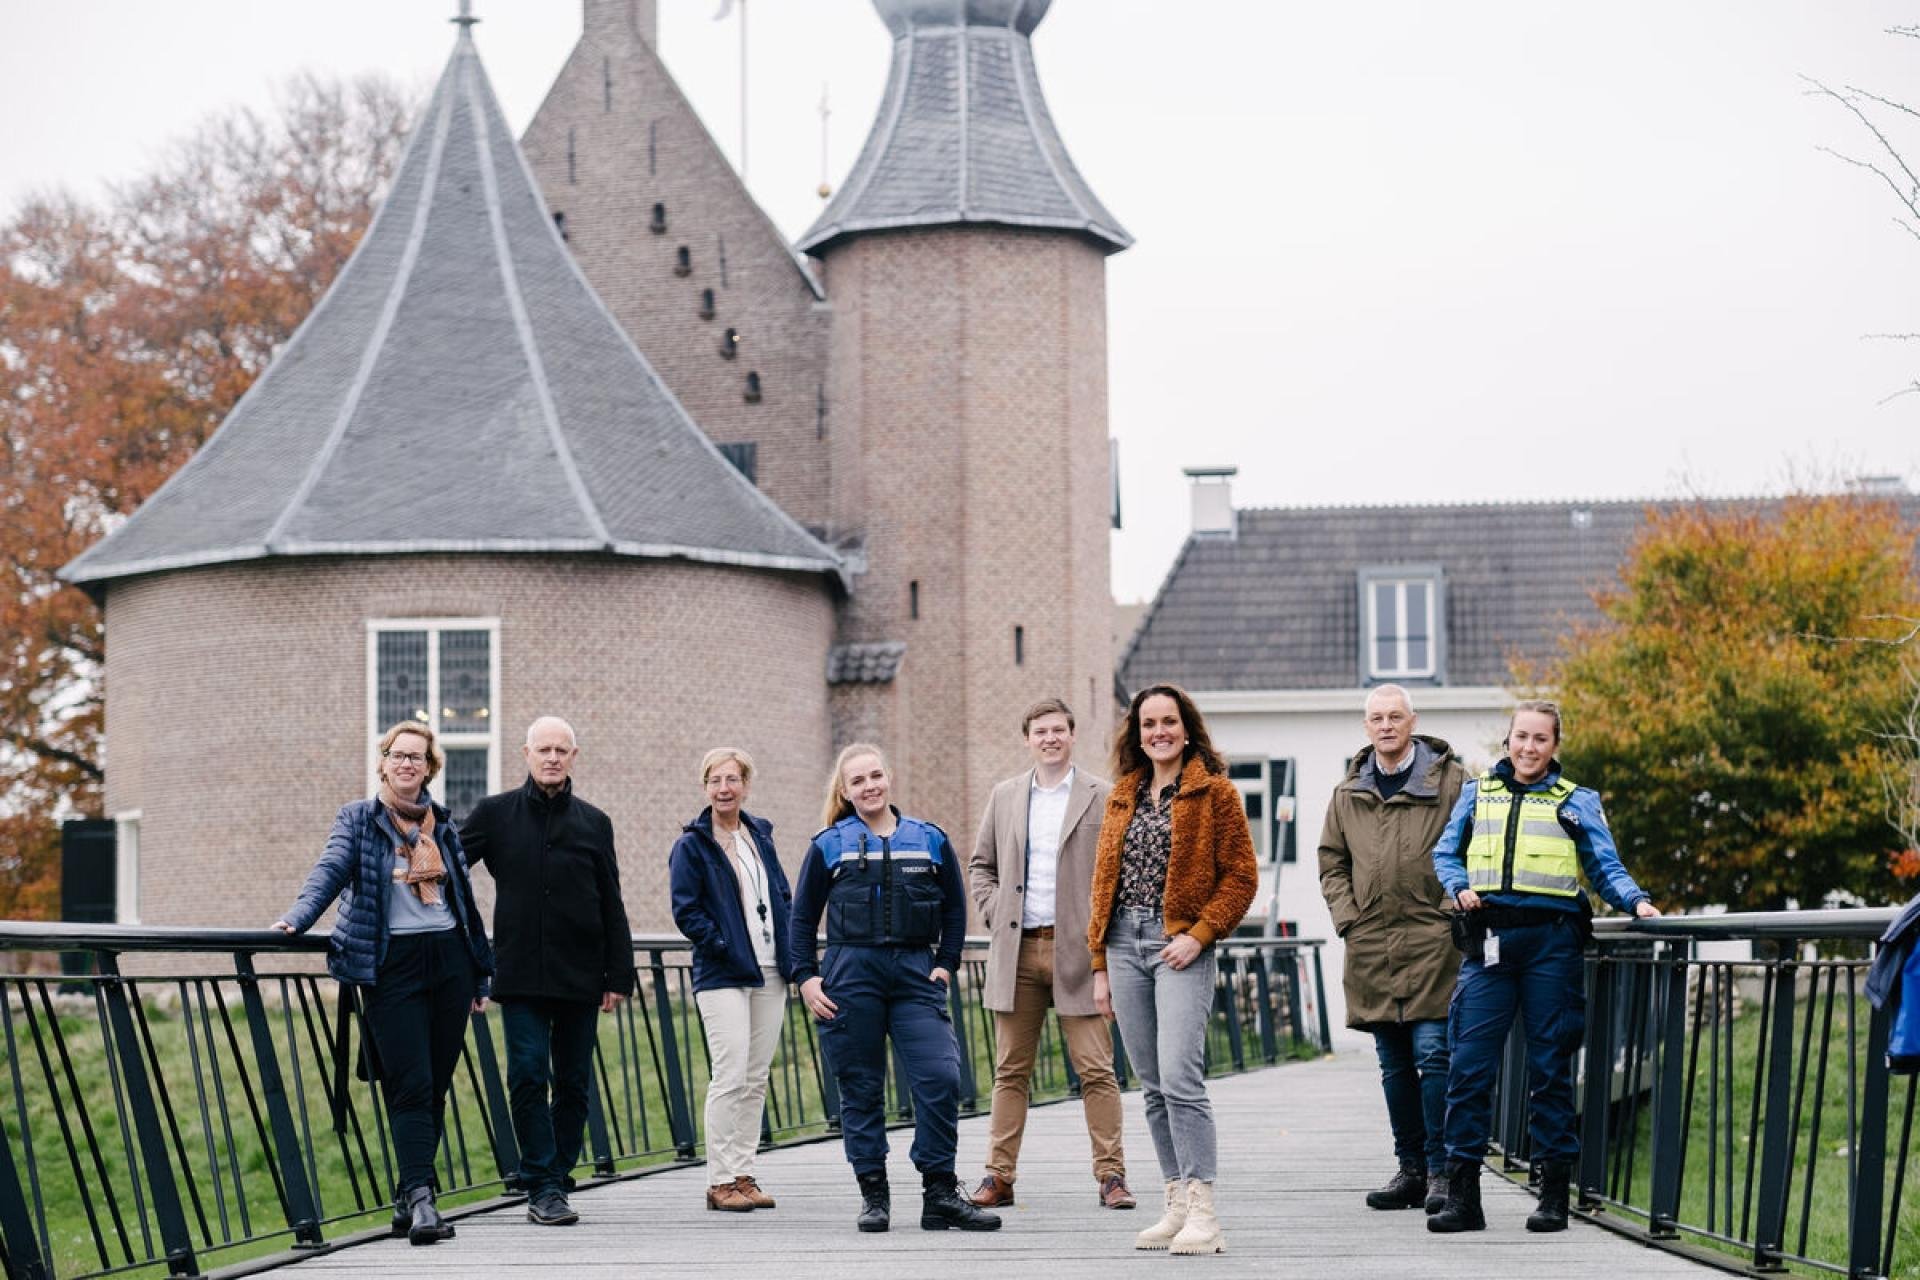 Acht medewerkers staan op de loopbrug in het kasteelpark van Coevorden. Op de achtergrond het kasteel van Coevorden.